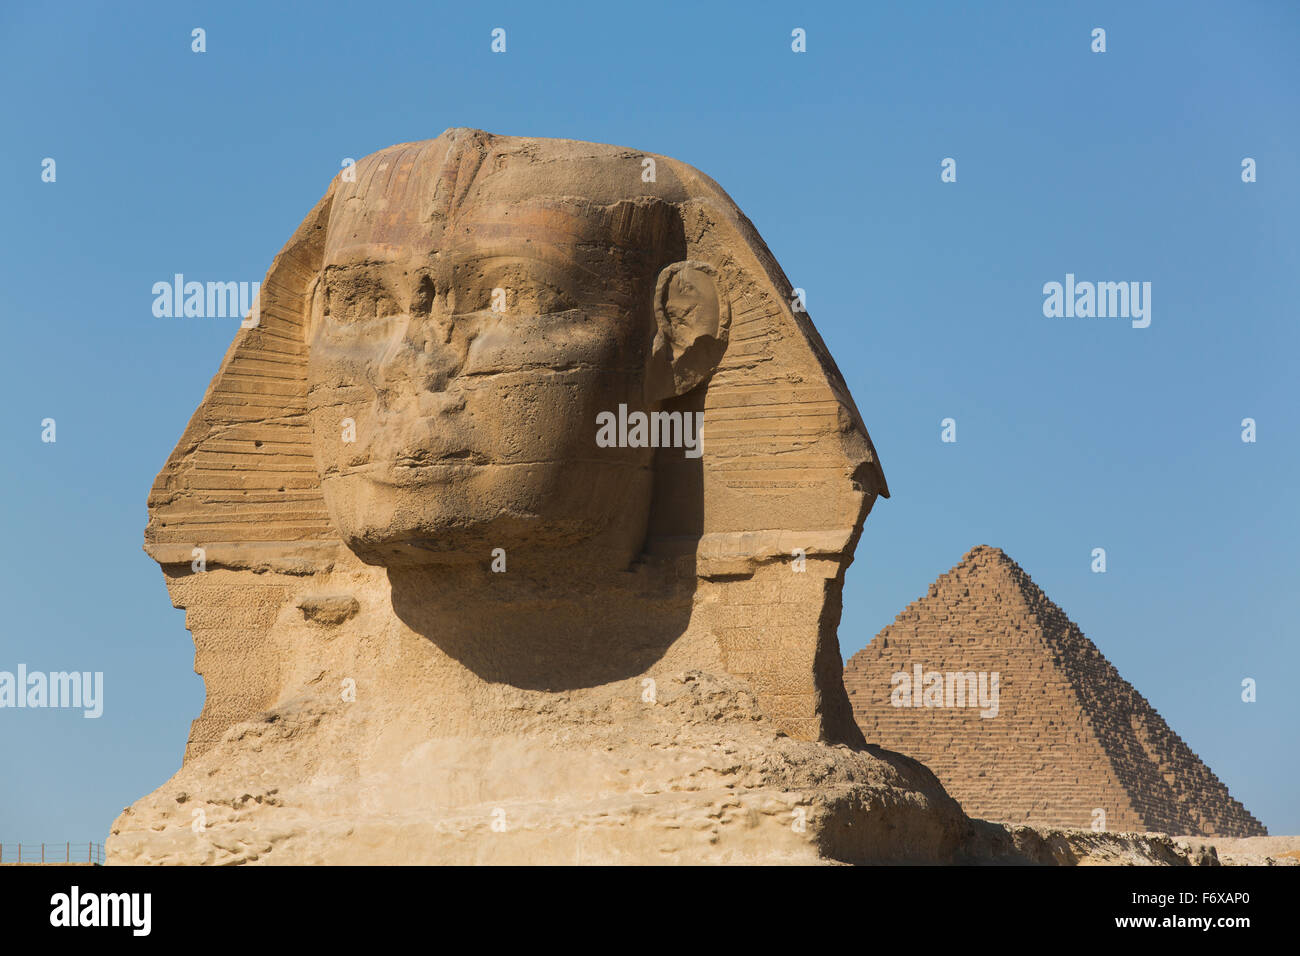 Sphinx (premier plan), pyramide de Mykérinos (arrière-plan), les pyramides de Gizeh, Giza, Egypte Banque D'Images